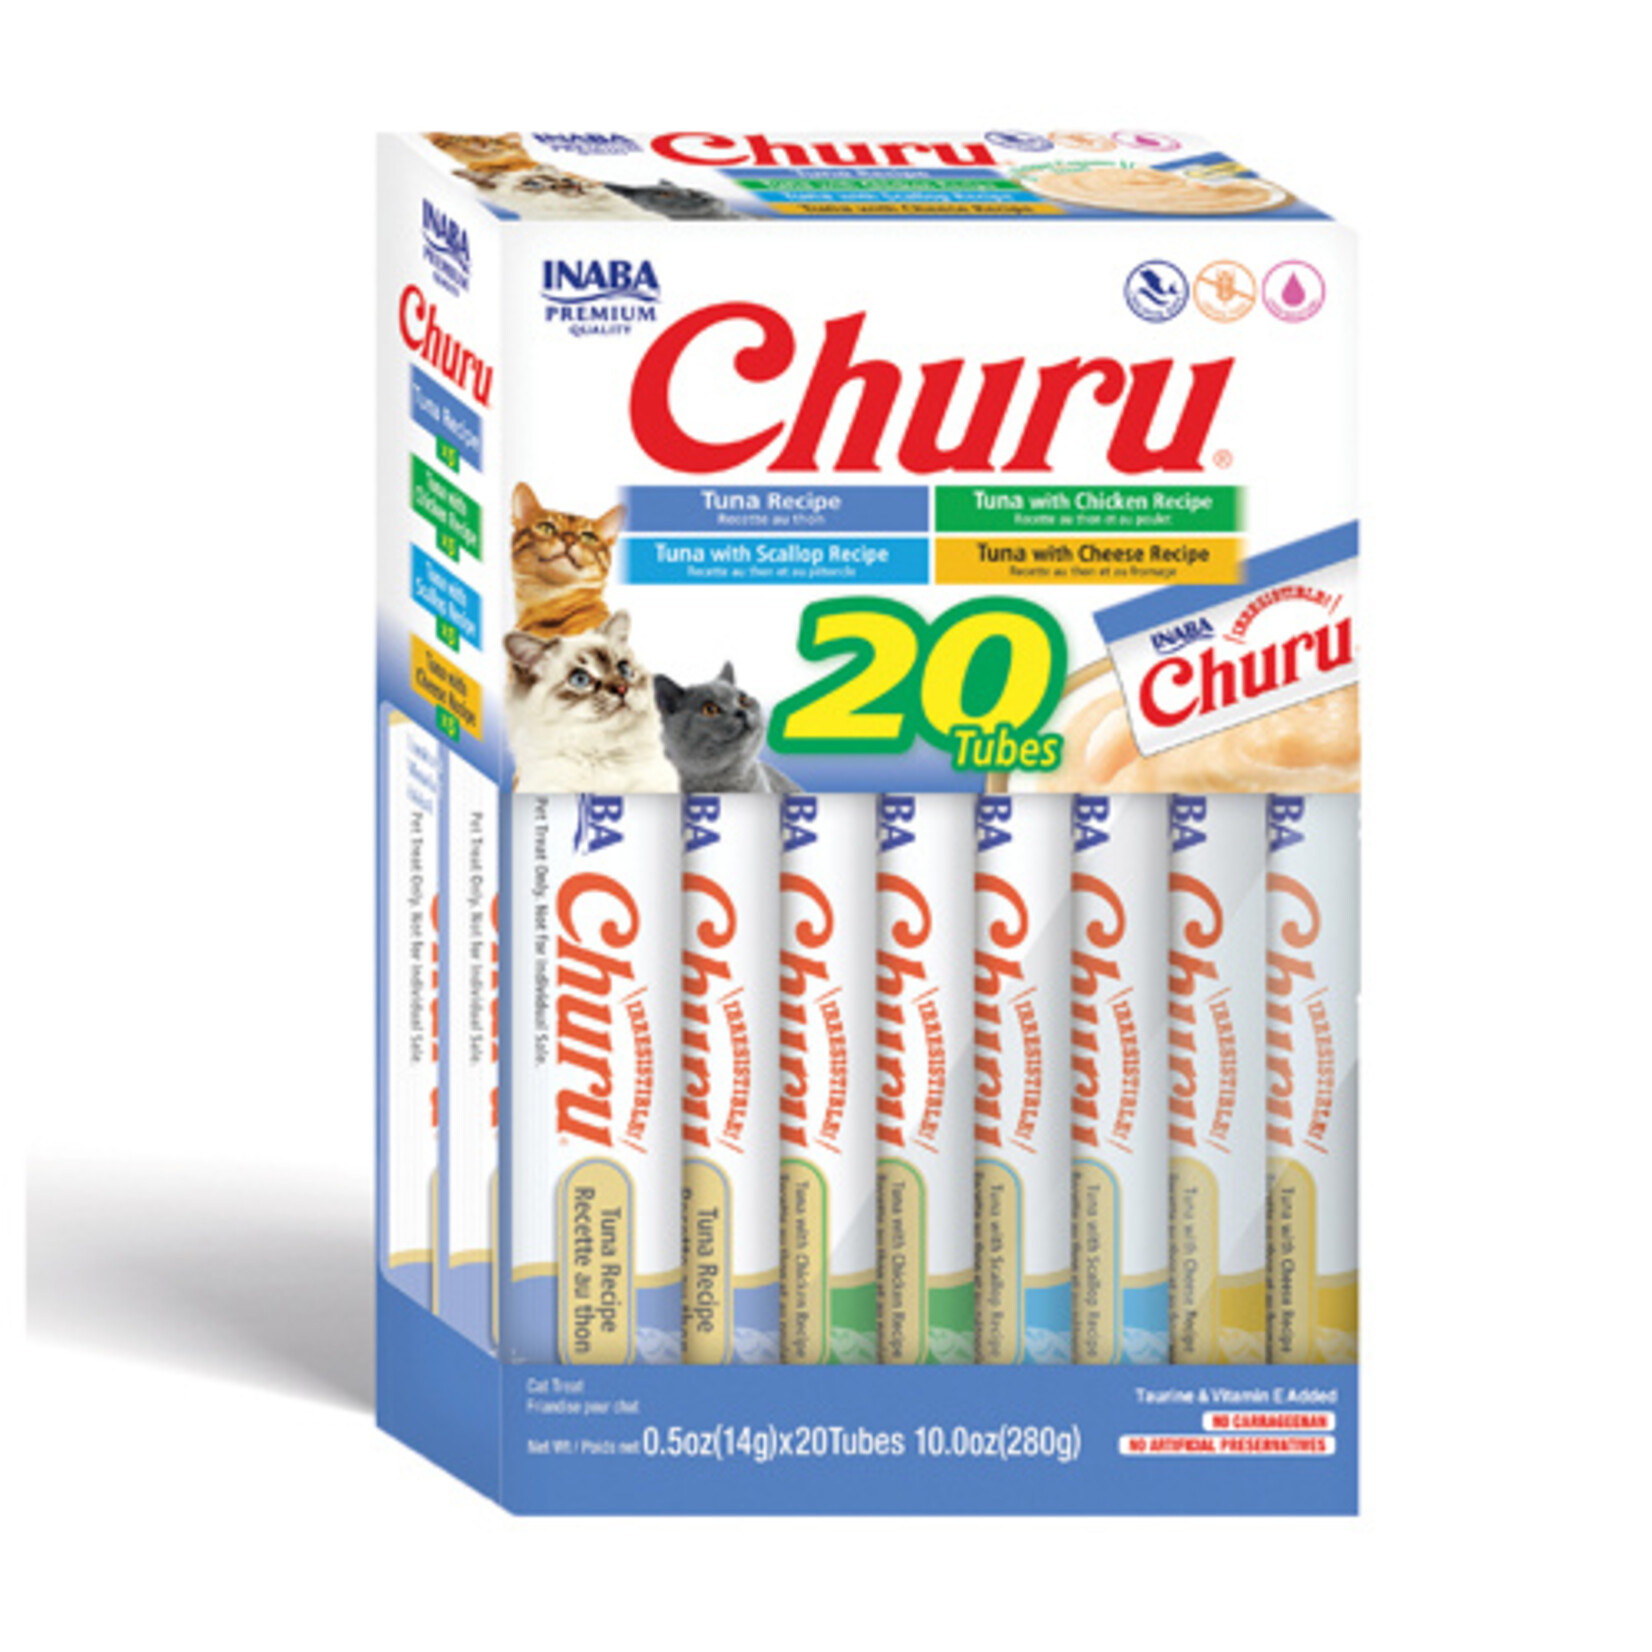 INABA Inaba Cat Churu Puree Tuna Varieties Box of 20 Tubes (280g)